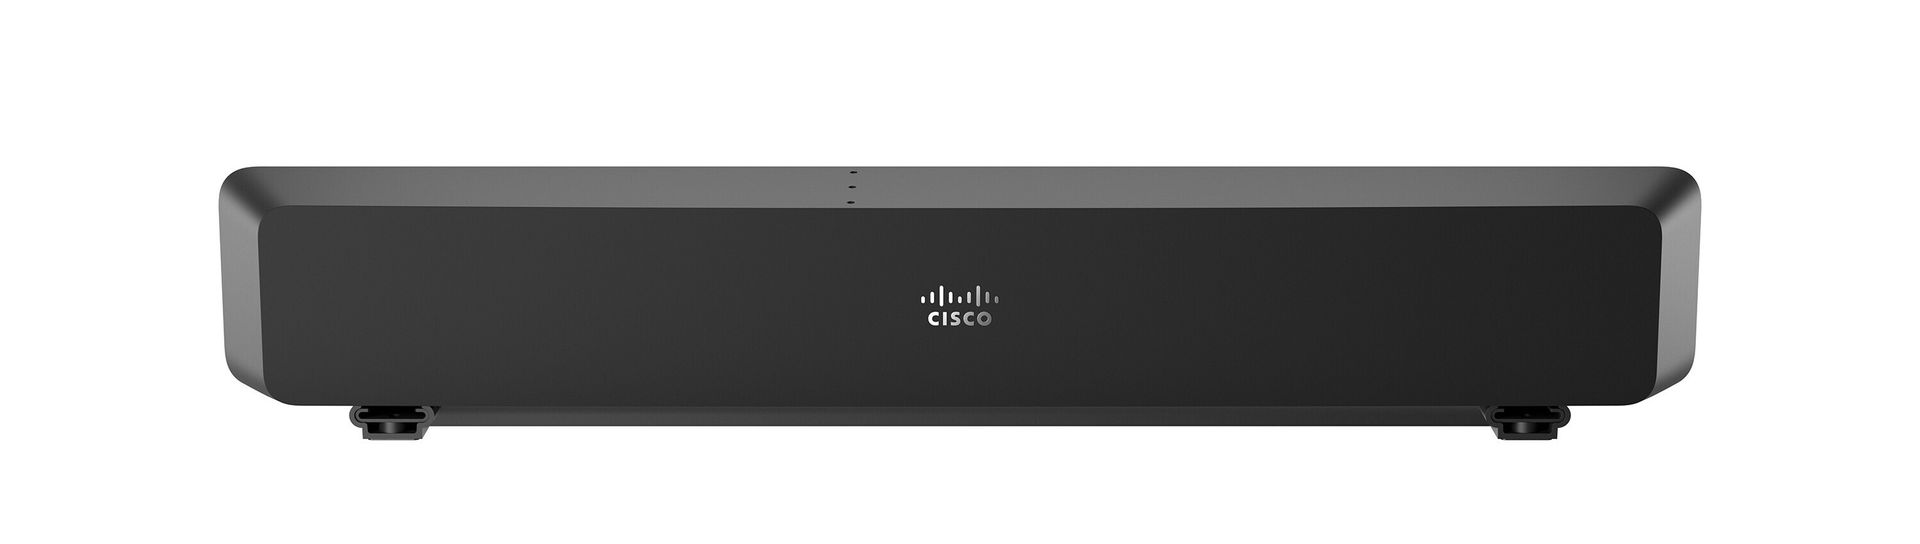 Cisco Room Bar